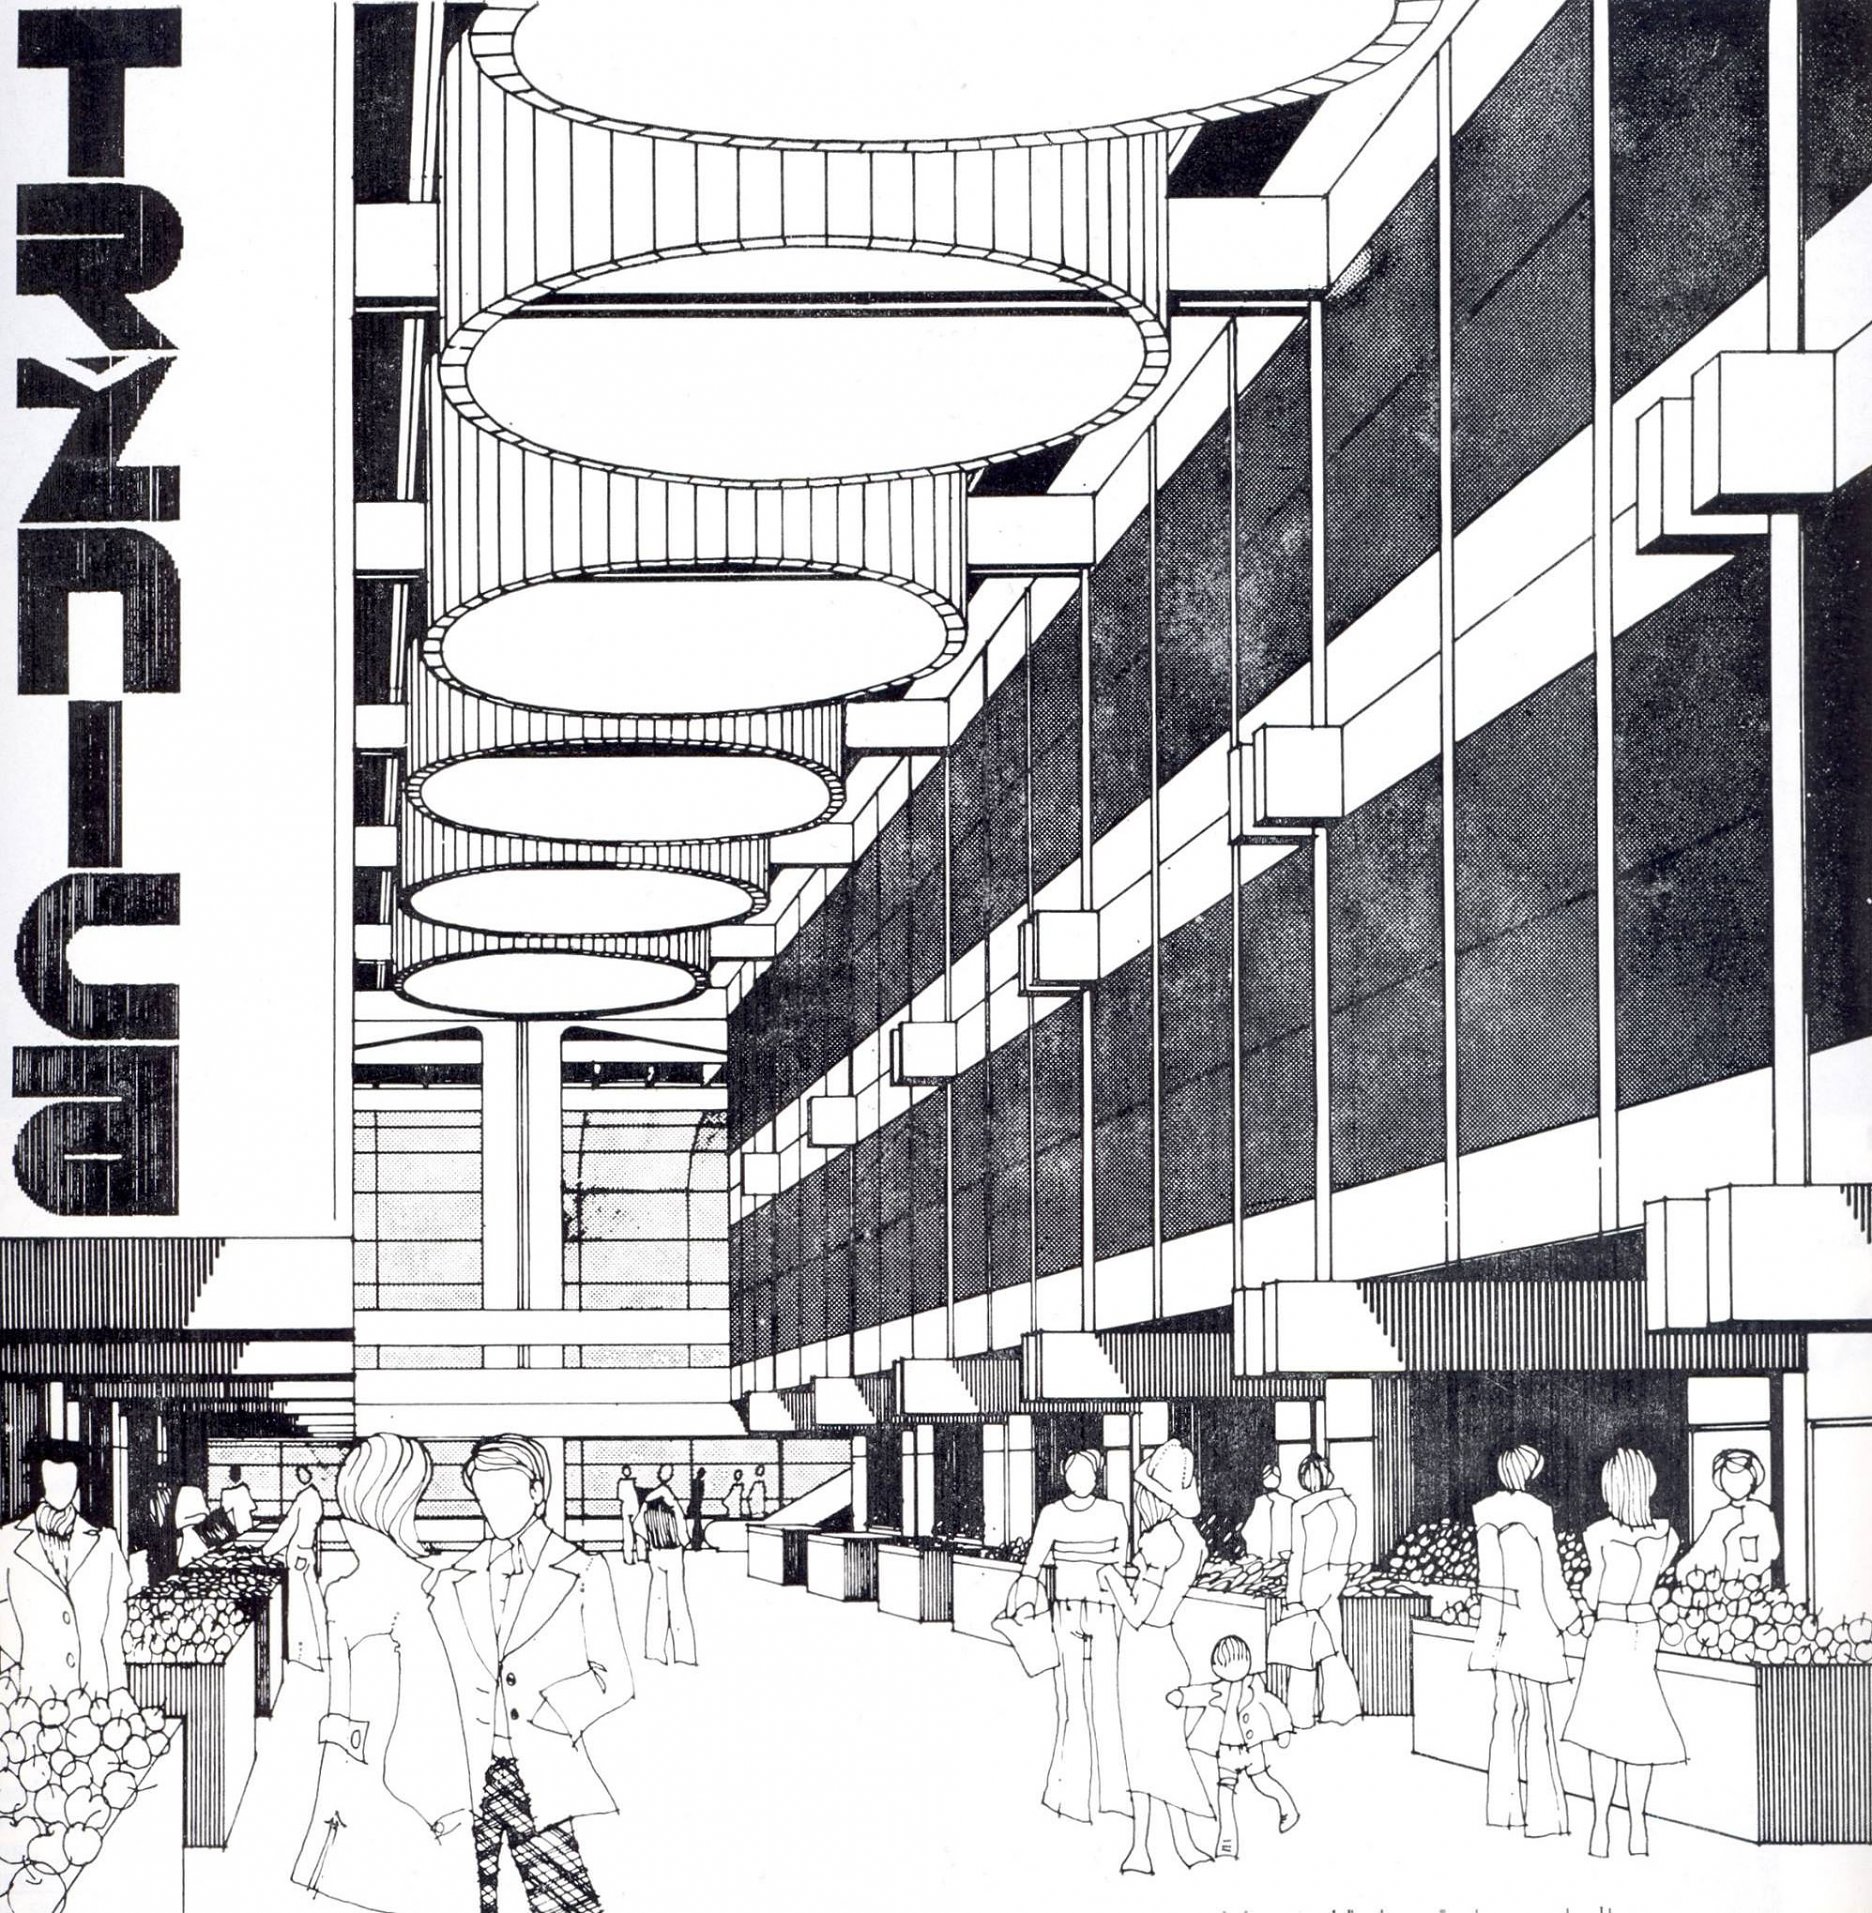 Tržnica na Trnavskom mýte v Bratislave Projekt: 1975-77Realizácia: 1978-1981Architektúra: Ivan MatušíkKonštrukcie: Pavel Čížek